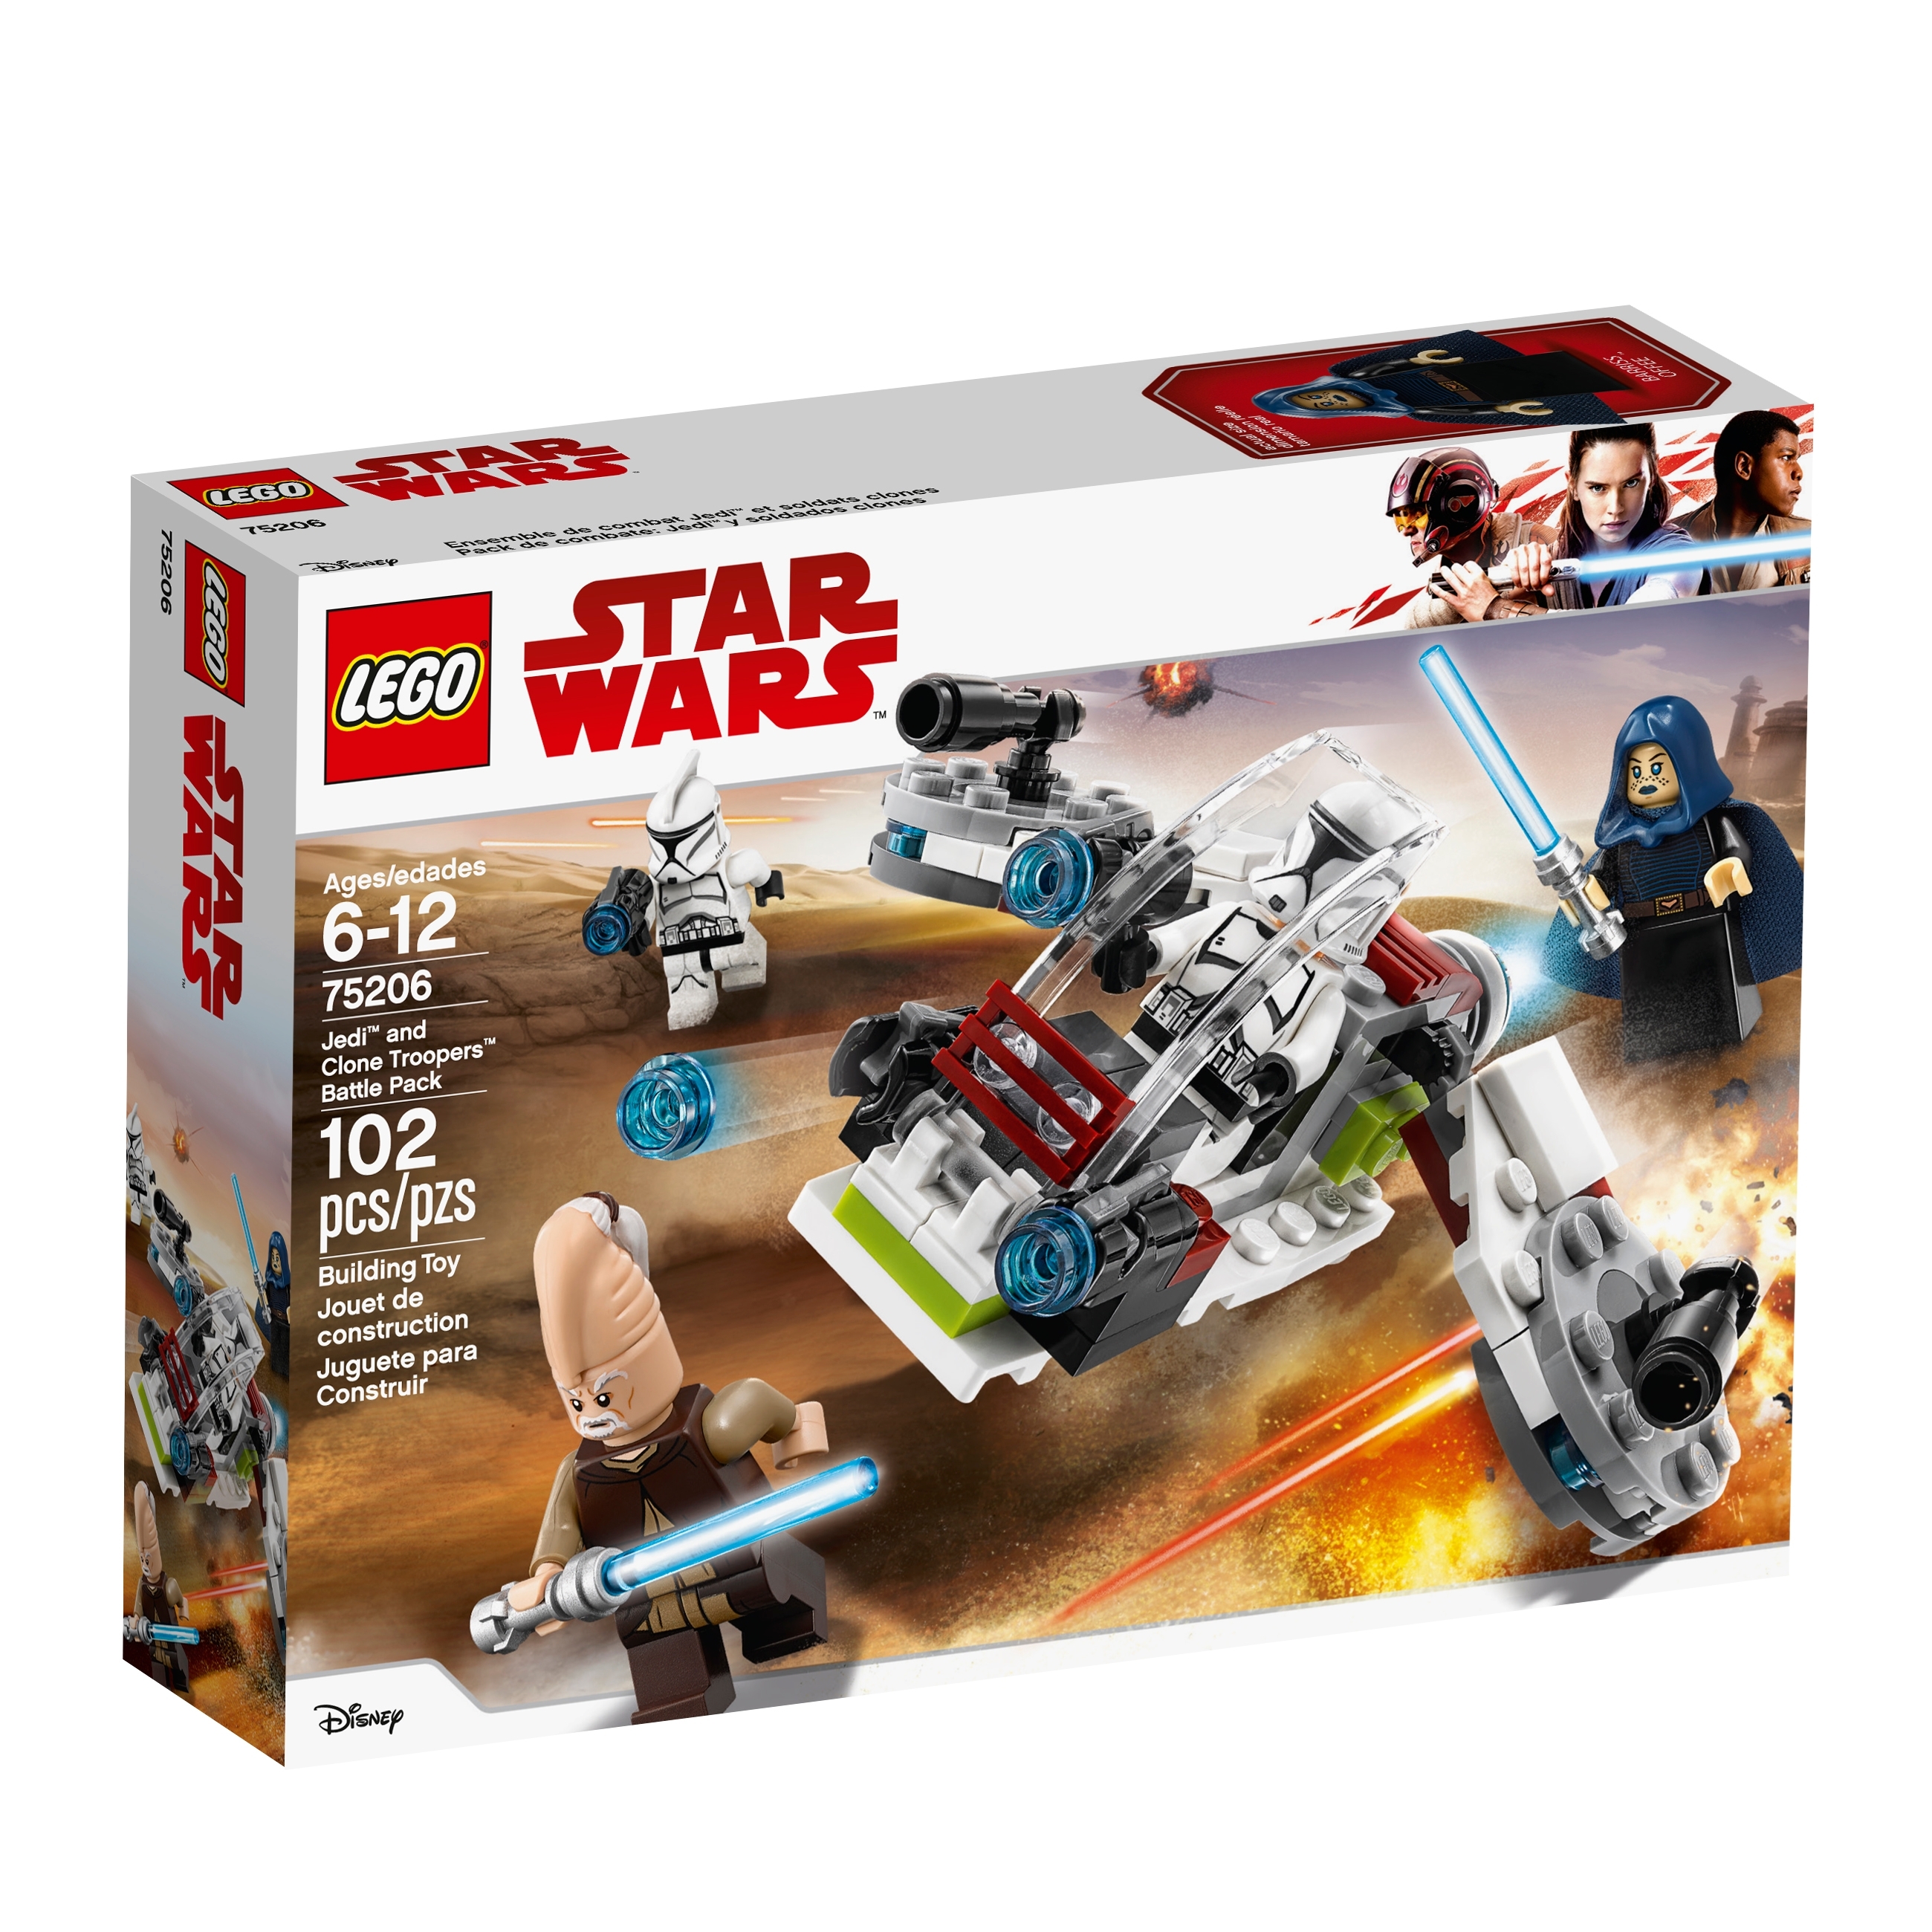 Neuf Lego Star Wars Ki-Adi Mundi 2018 Star Wars Set 75206 